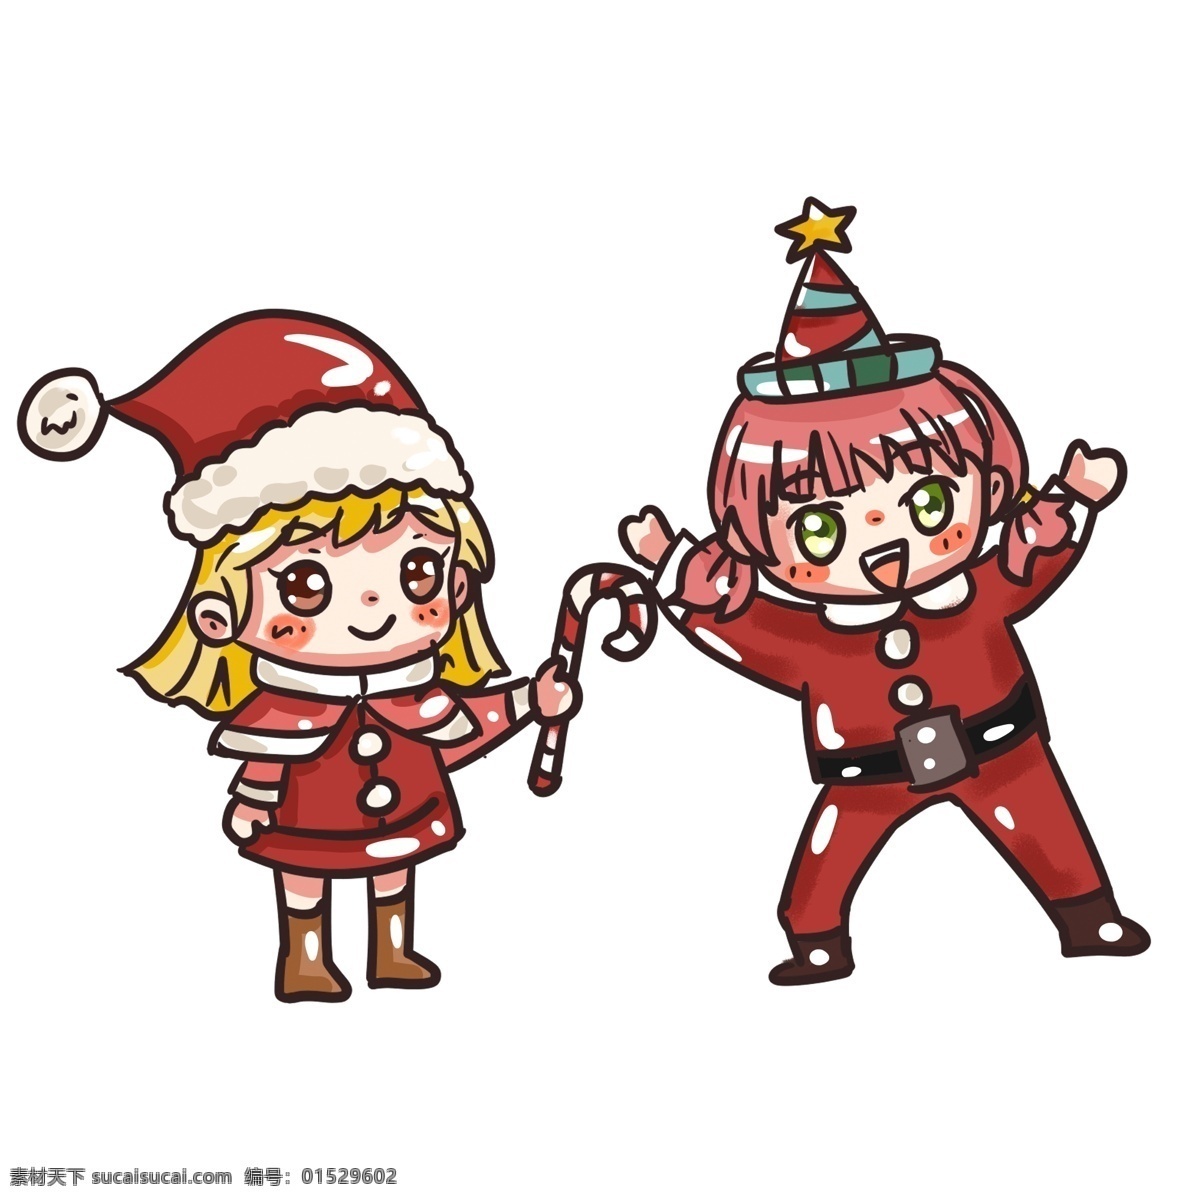 圣诞节 狂欢 派对 萌 妹子 庆祝 卡通 手绘 萌妹子 糖果 圣诞帽 圣诞老人 圣诞装 cosplay